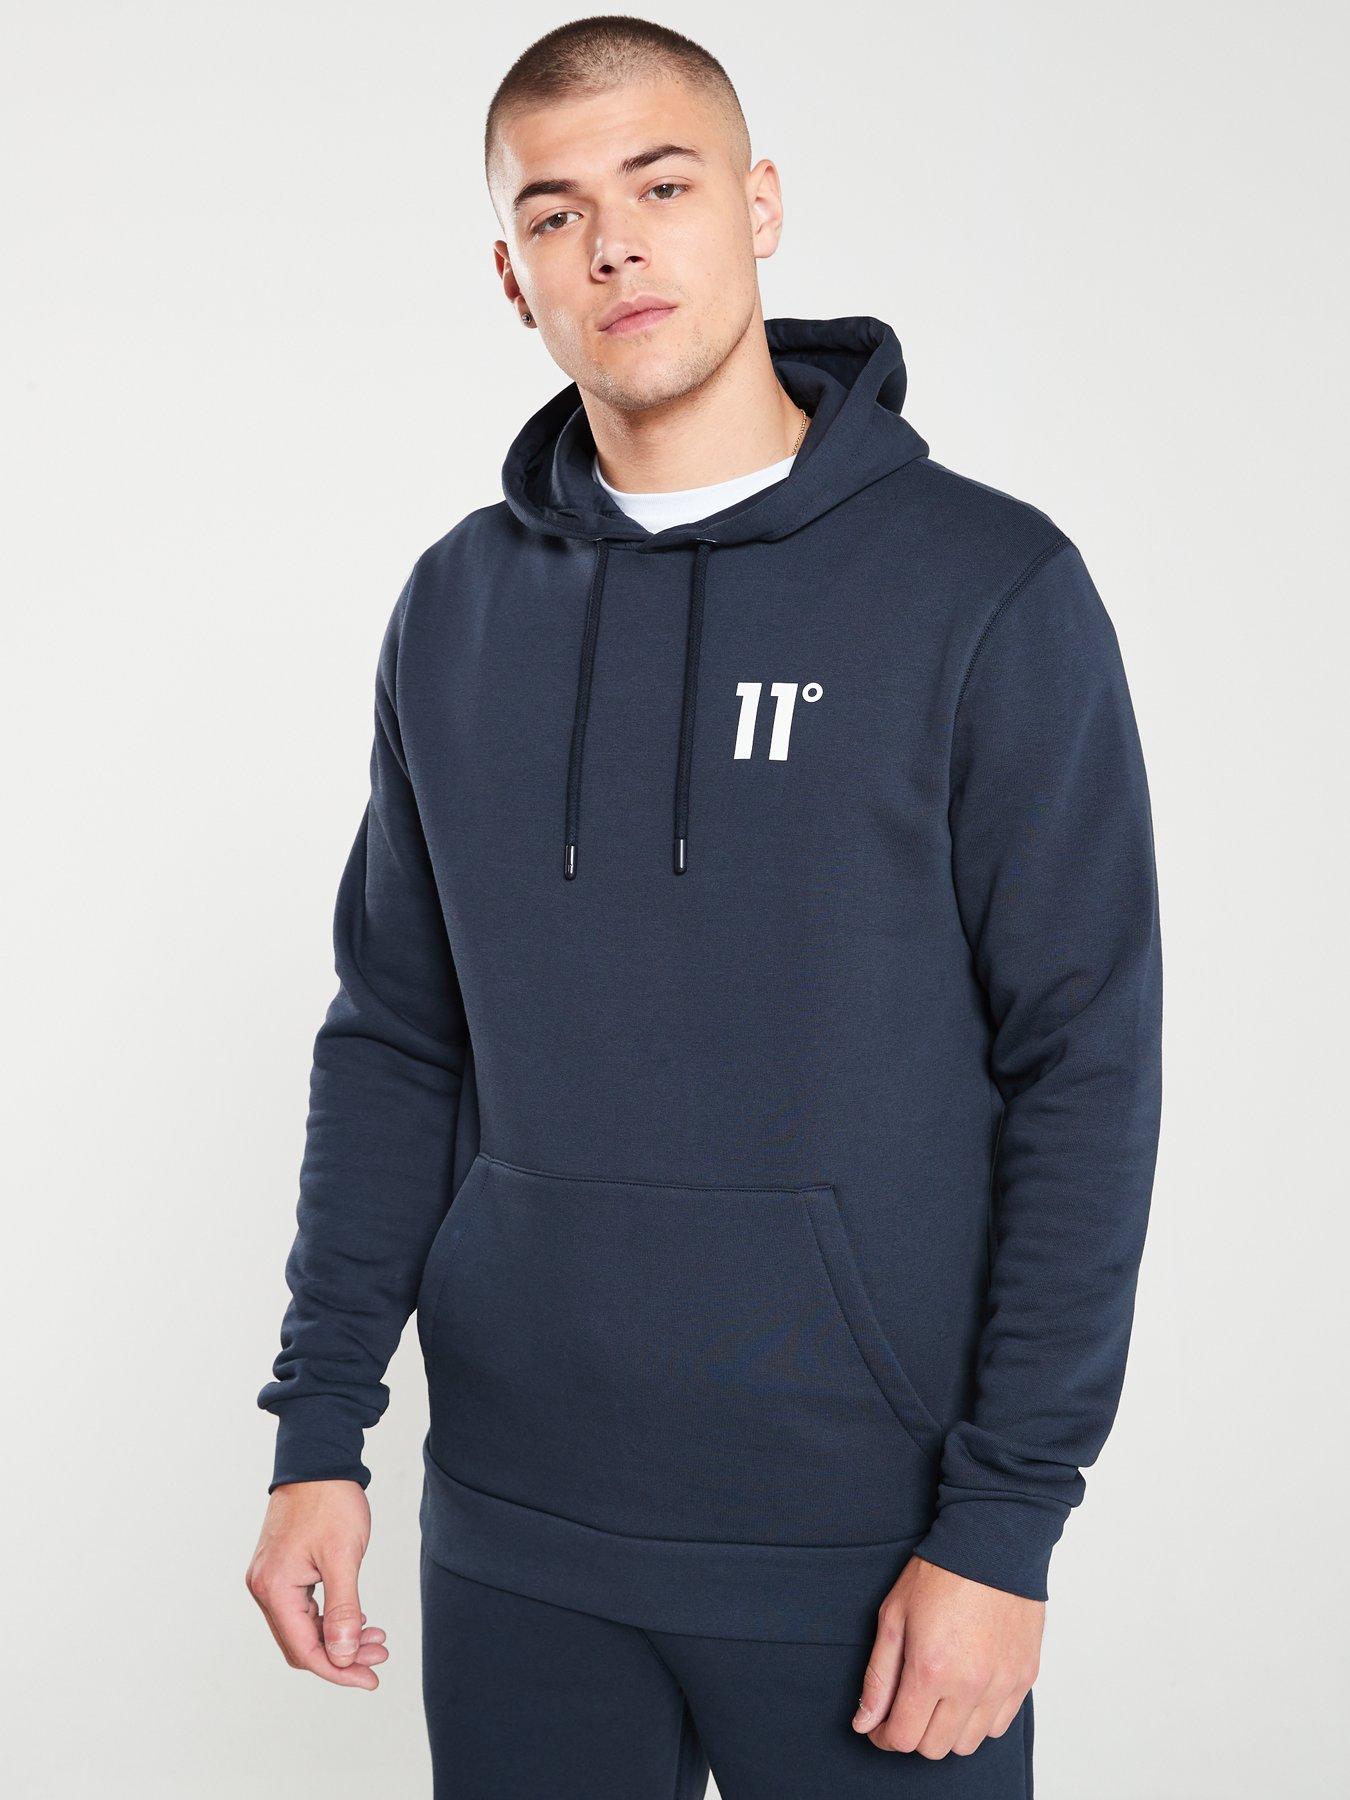 11 degrees hoodie sale